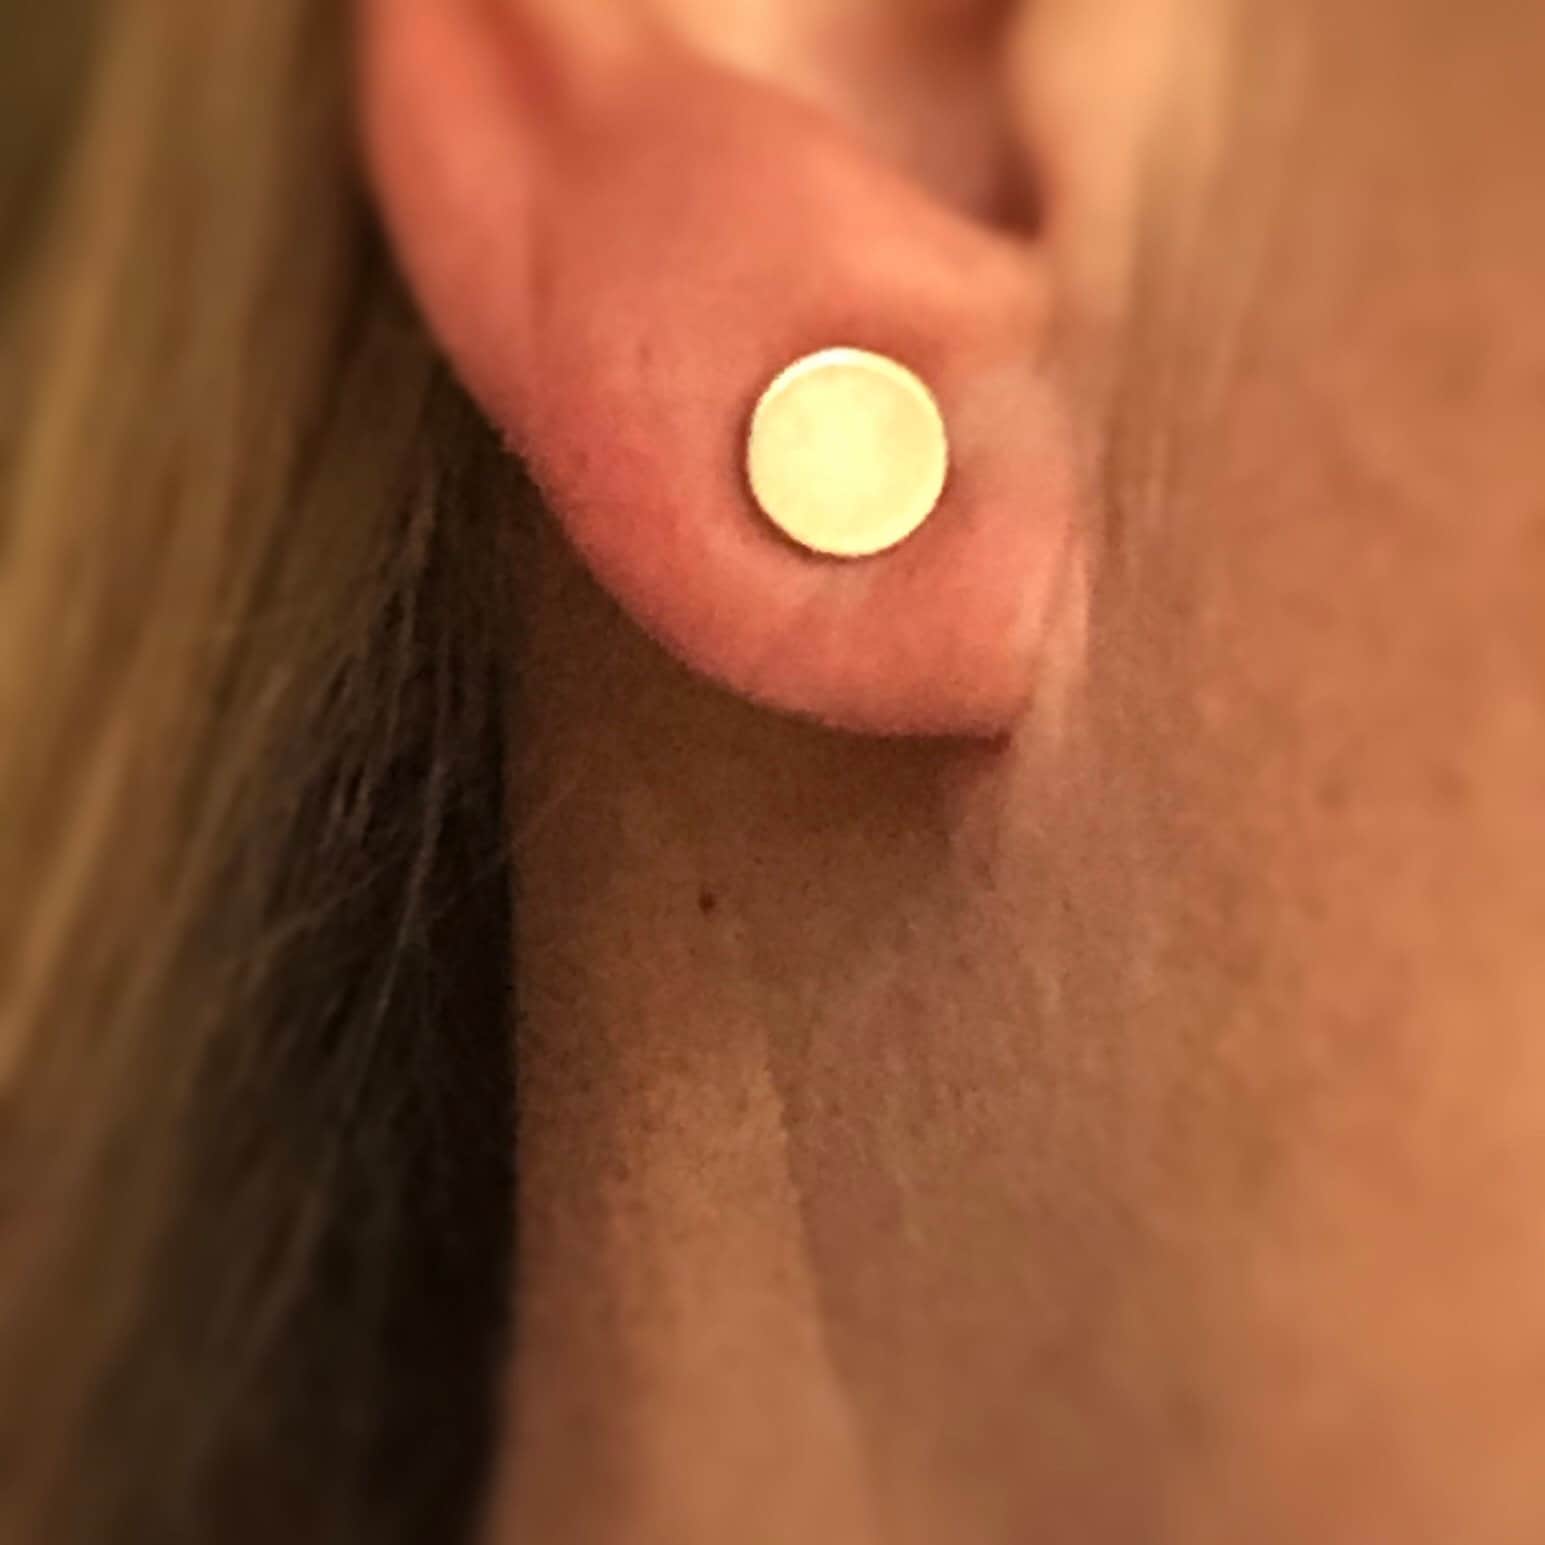 Silver keloid pressure earring • Magnetic earrings for keloids